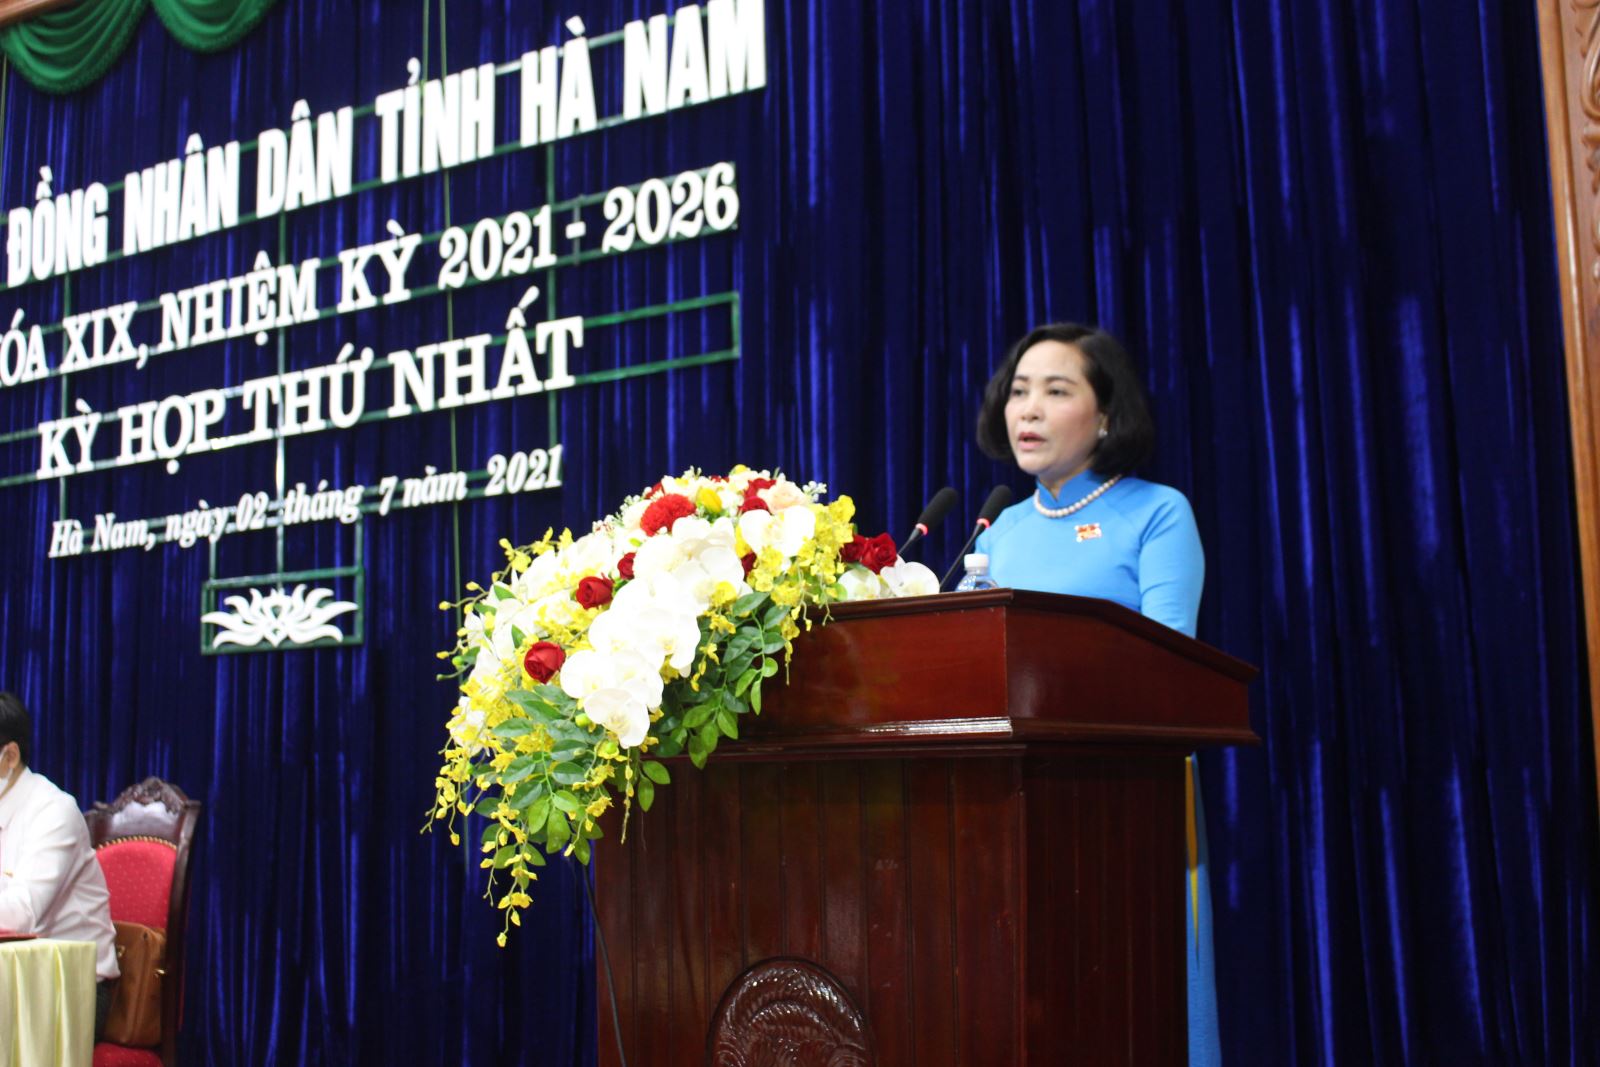 Ủy viên Trung ương Đảng, Trưởng ban Công tác đại biểu, Phó Trưởng ban Tổ chức Trung ương Nguyễn Thị Thanh phát biểu chỉ đạo tại kỳ họp